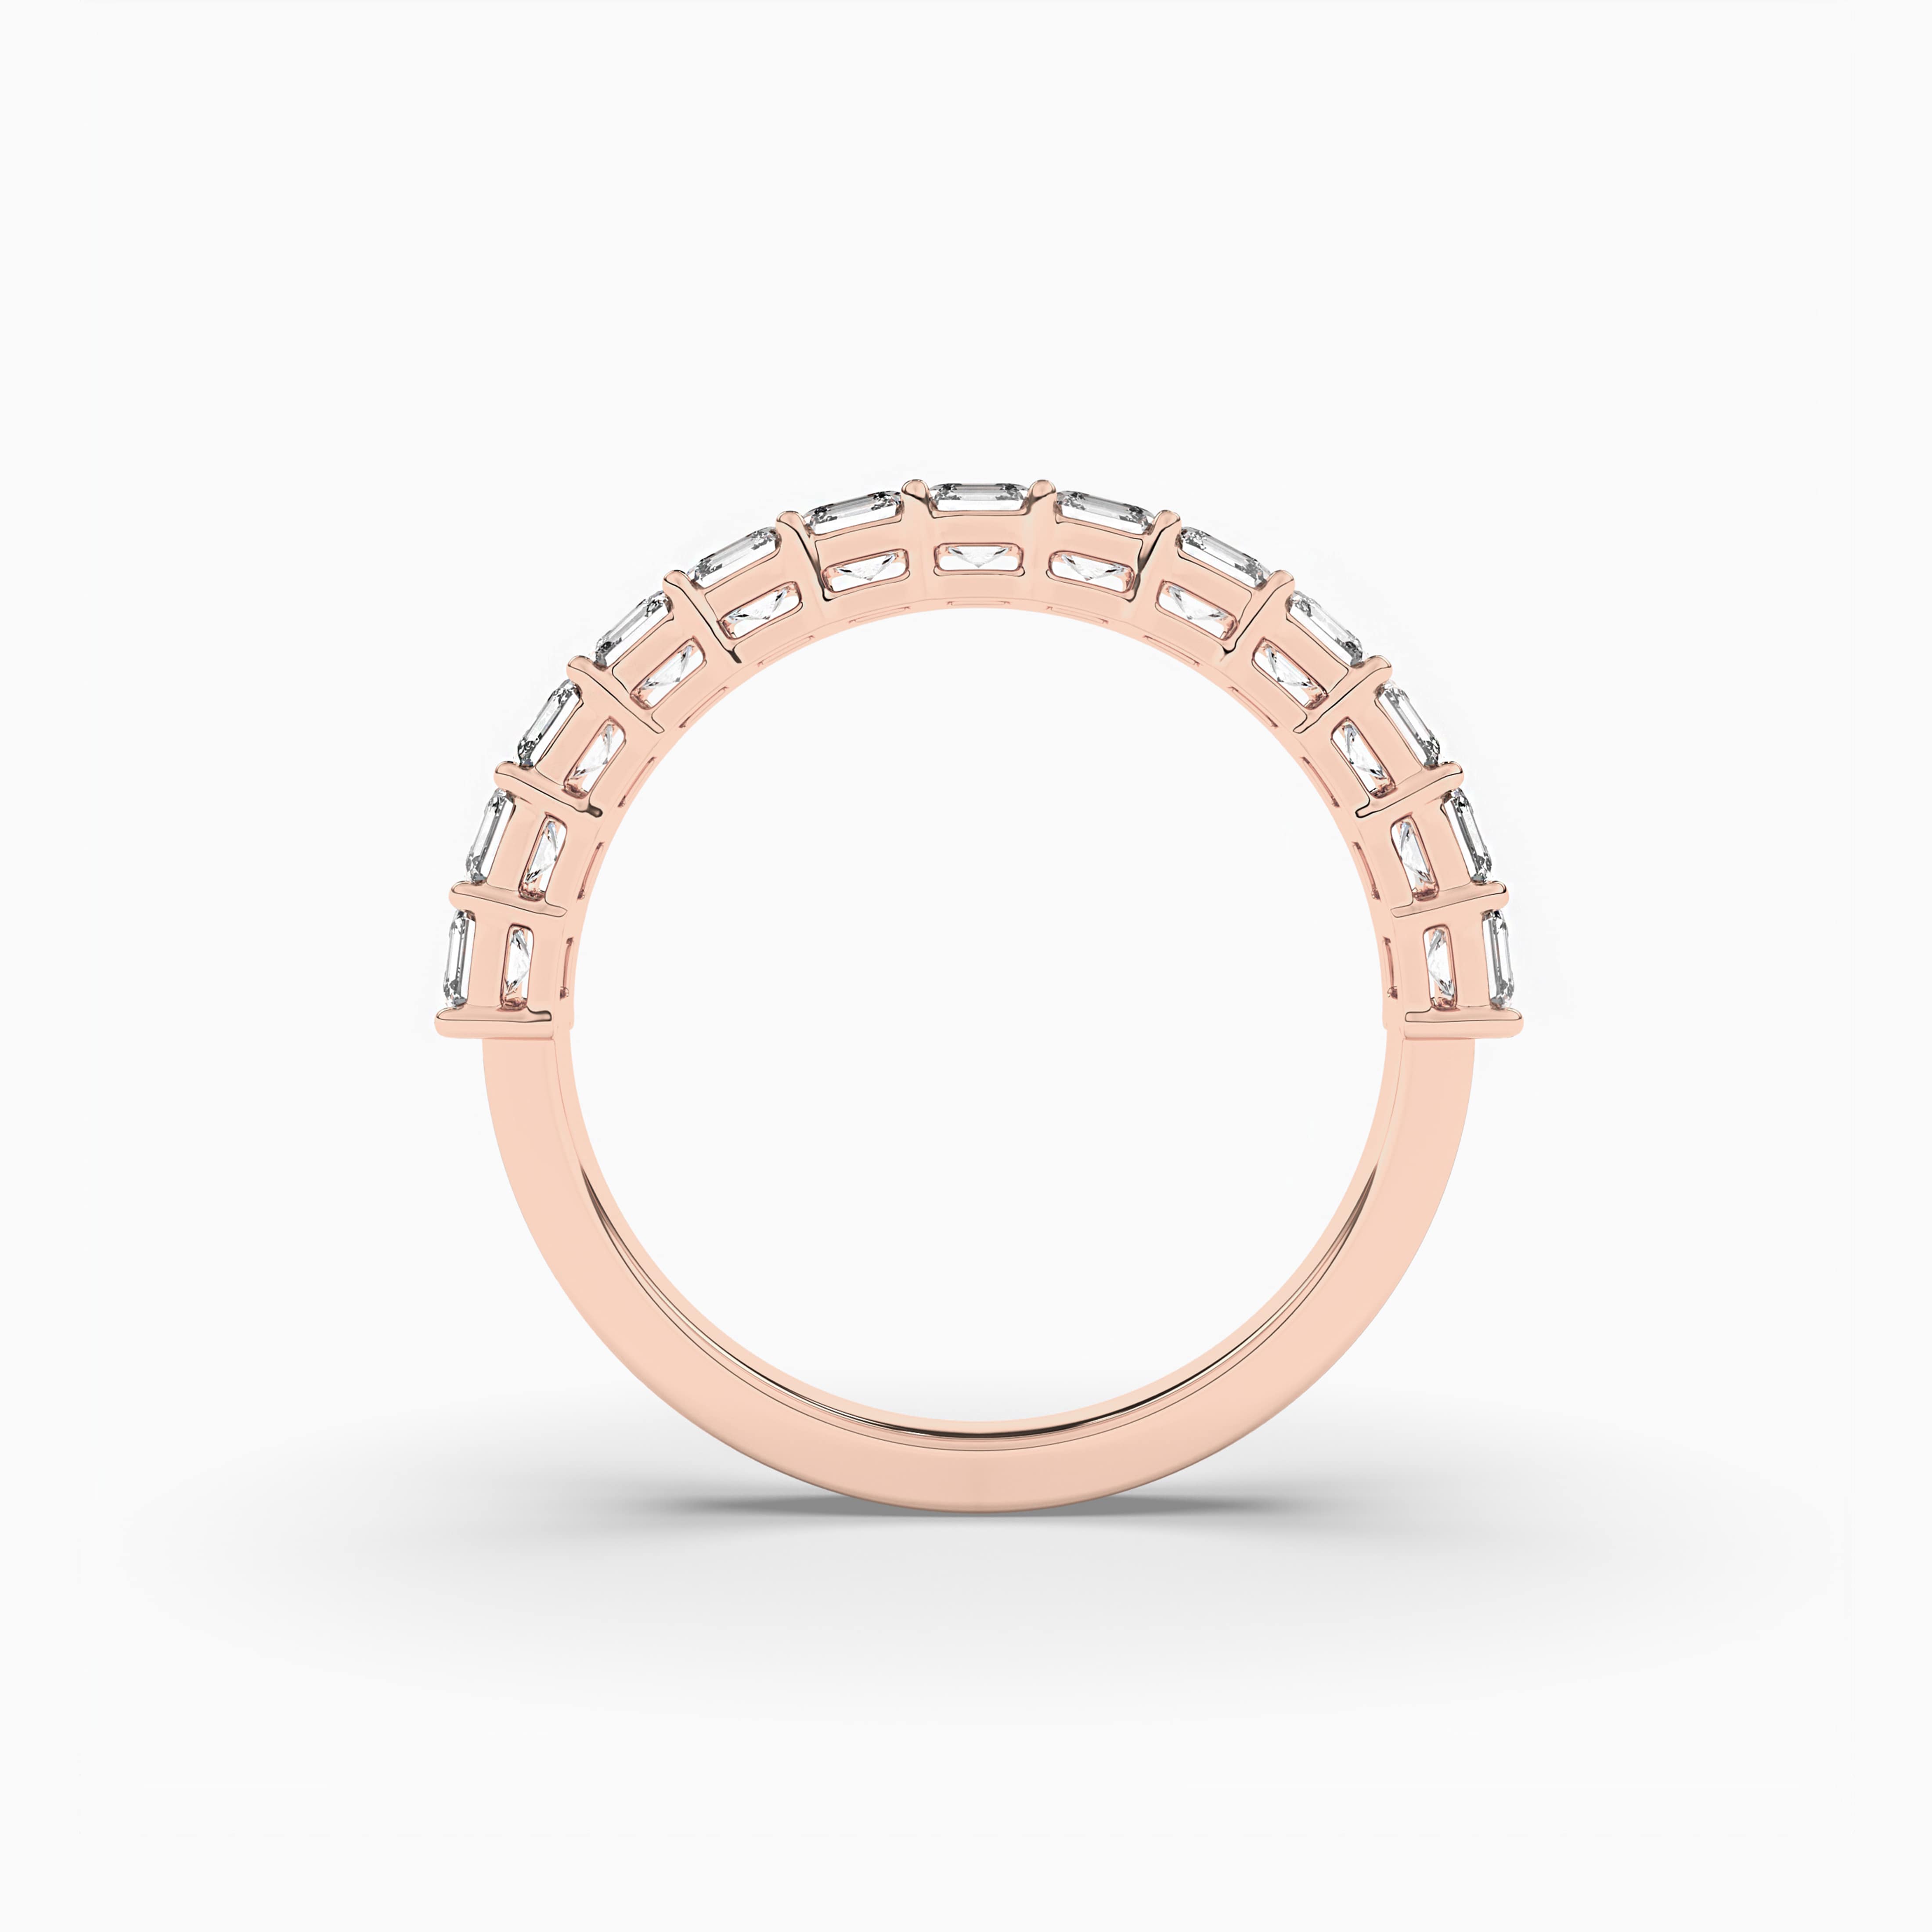 Asscher Cut Diamond Band Rose Gold For Engagement Ring